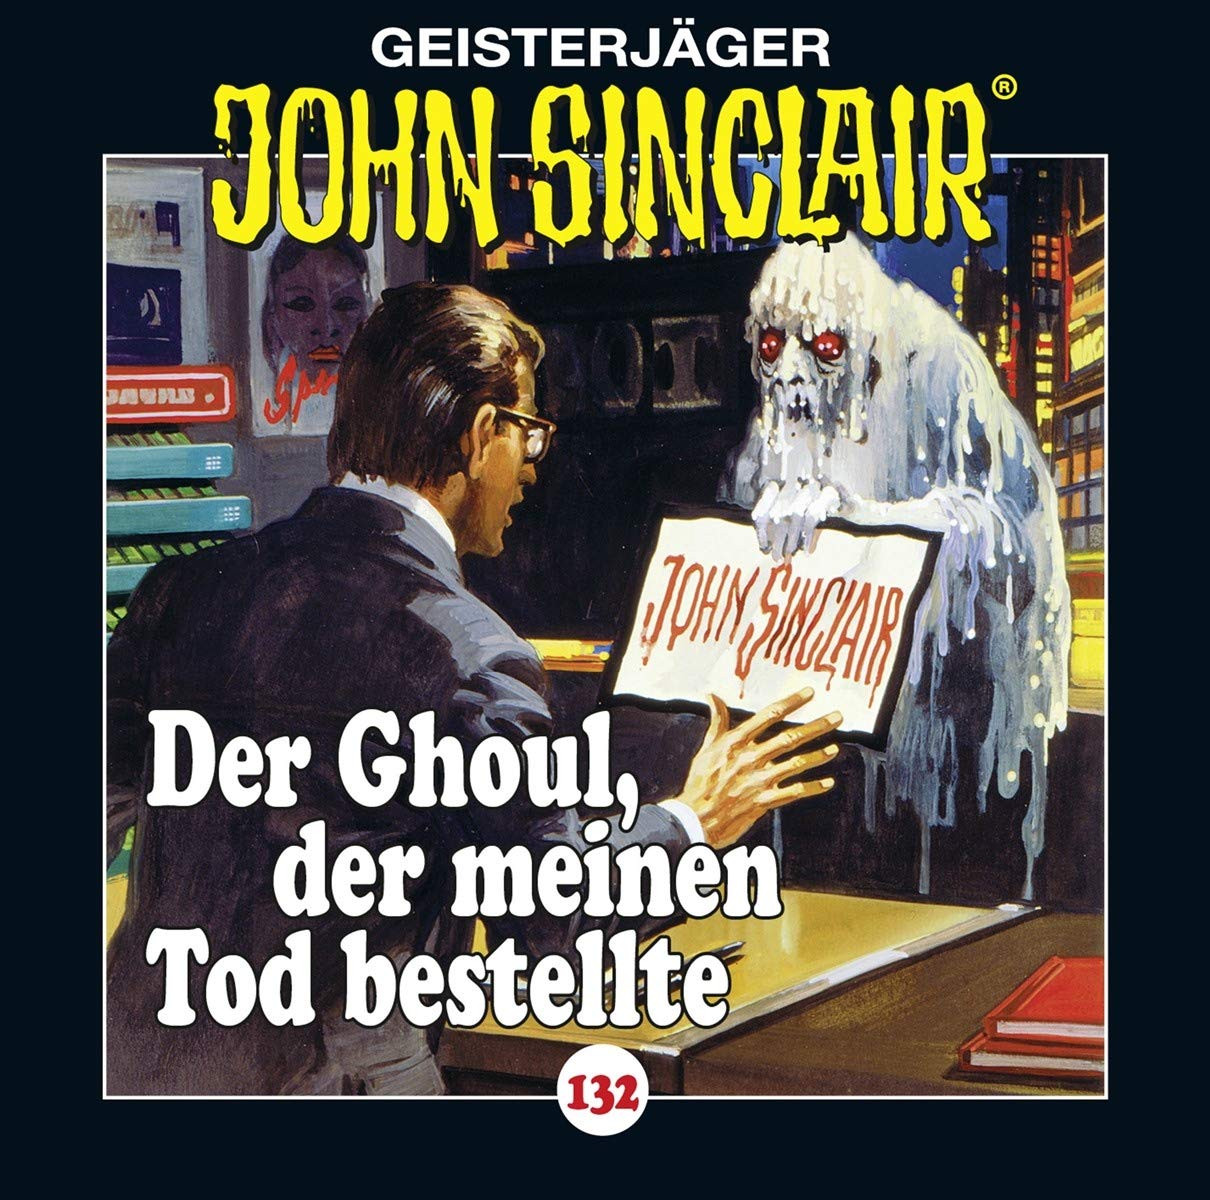 John Sinclair - Folge 132: Der Ghoul, der meinen Tod bestellte